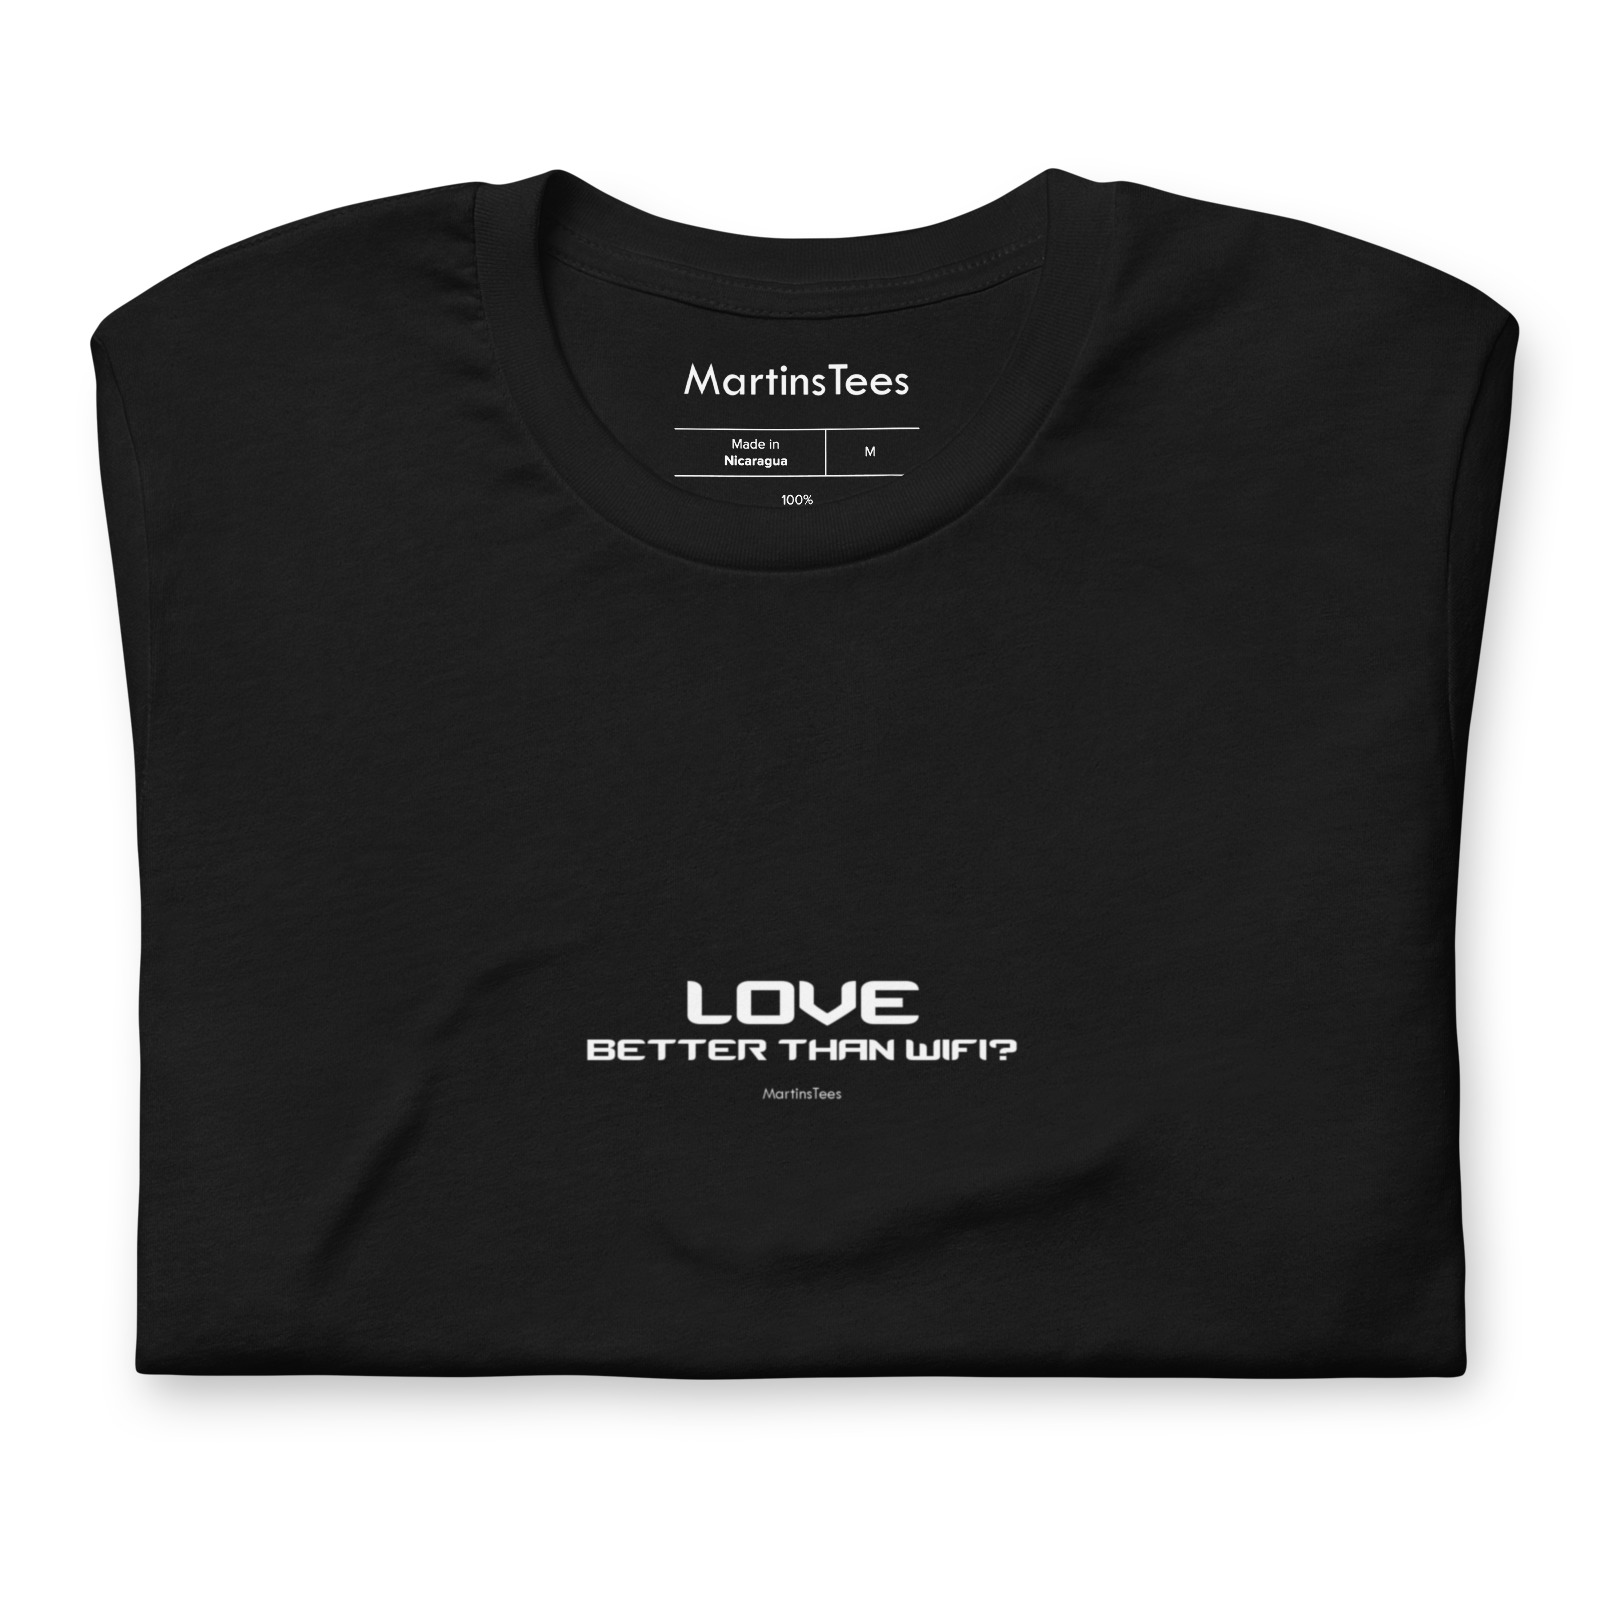 T-shirt: LOVE - BETTER THAN WIFI?